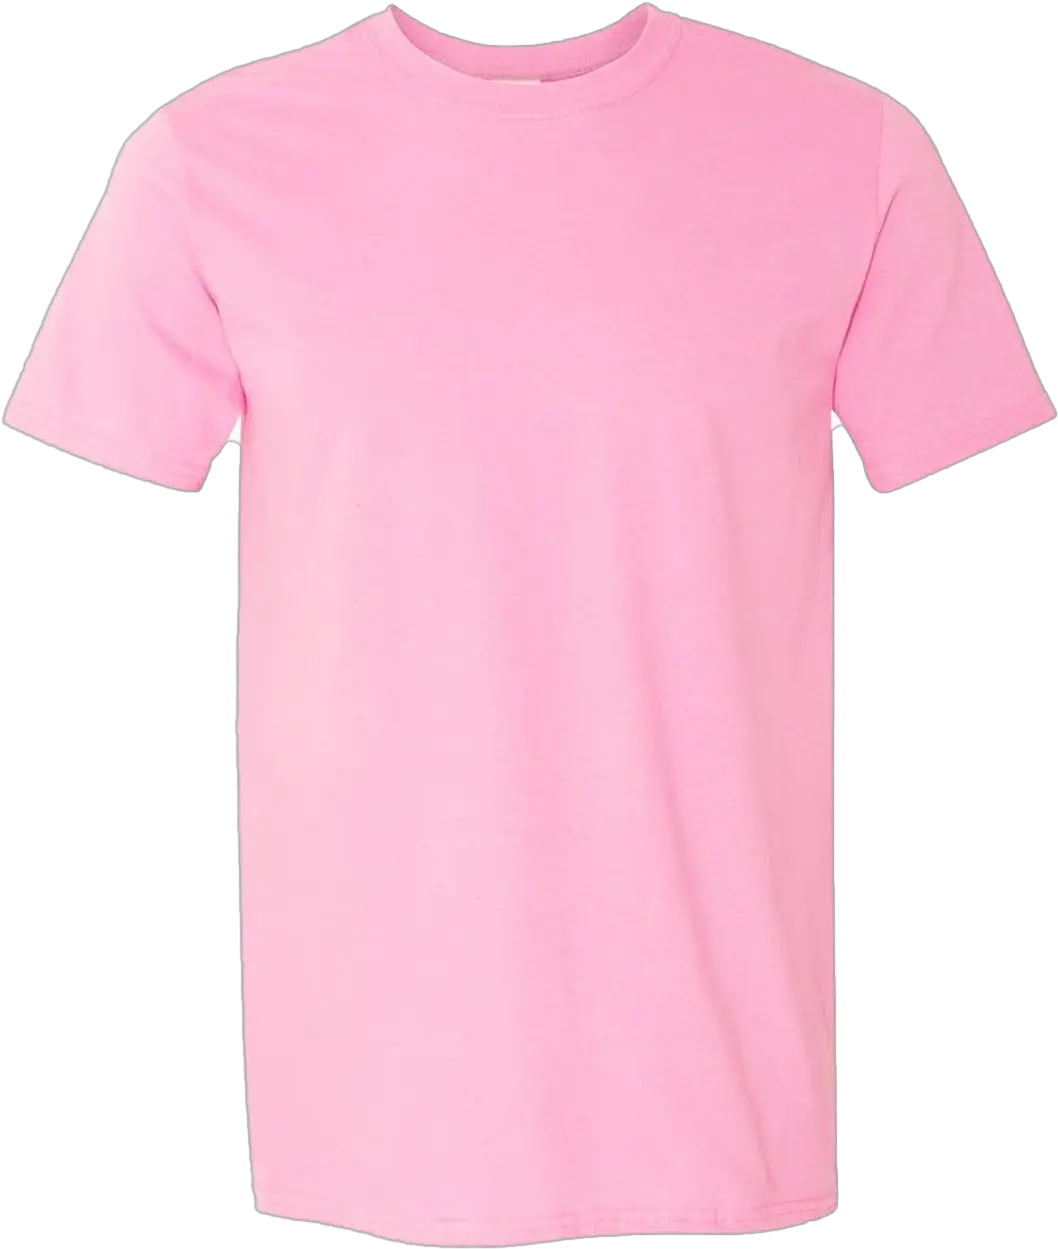 Pink T Shirt Png Transparent Images Pictures Photos Png Arts Mens Pink T Shirt Plain Tee Shirt Png